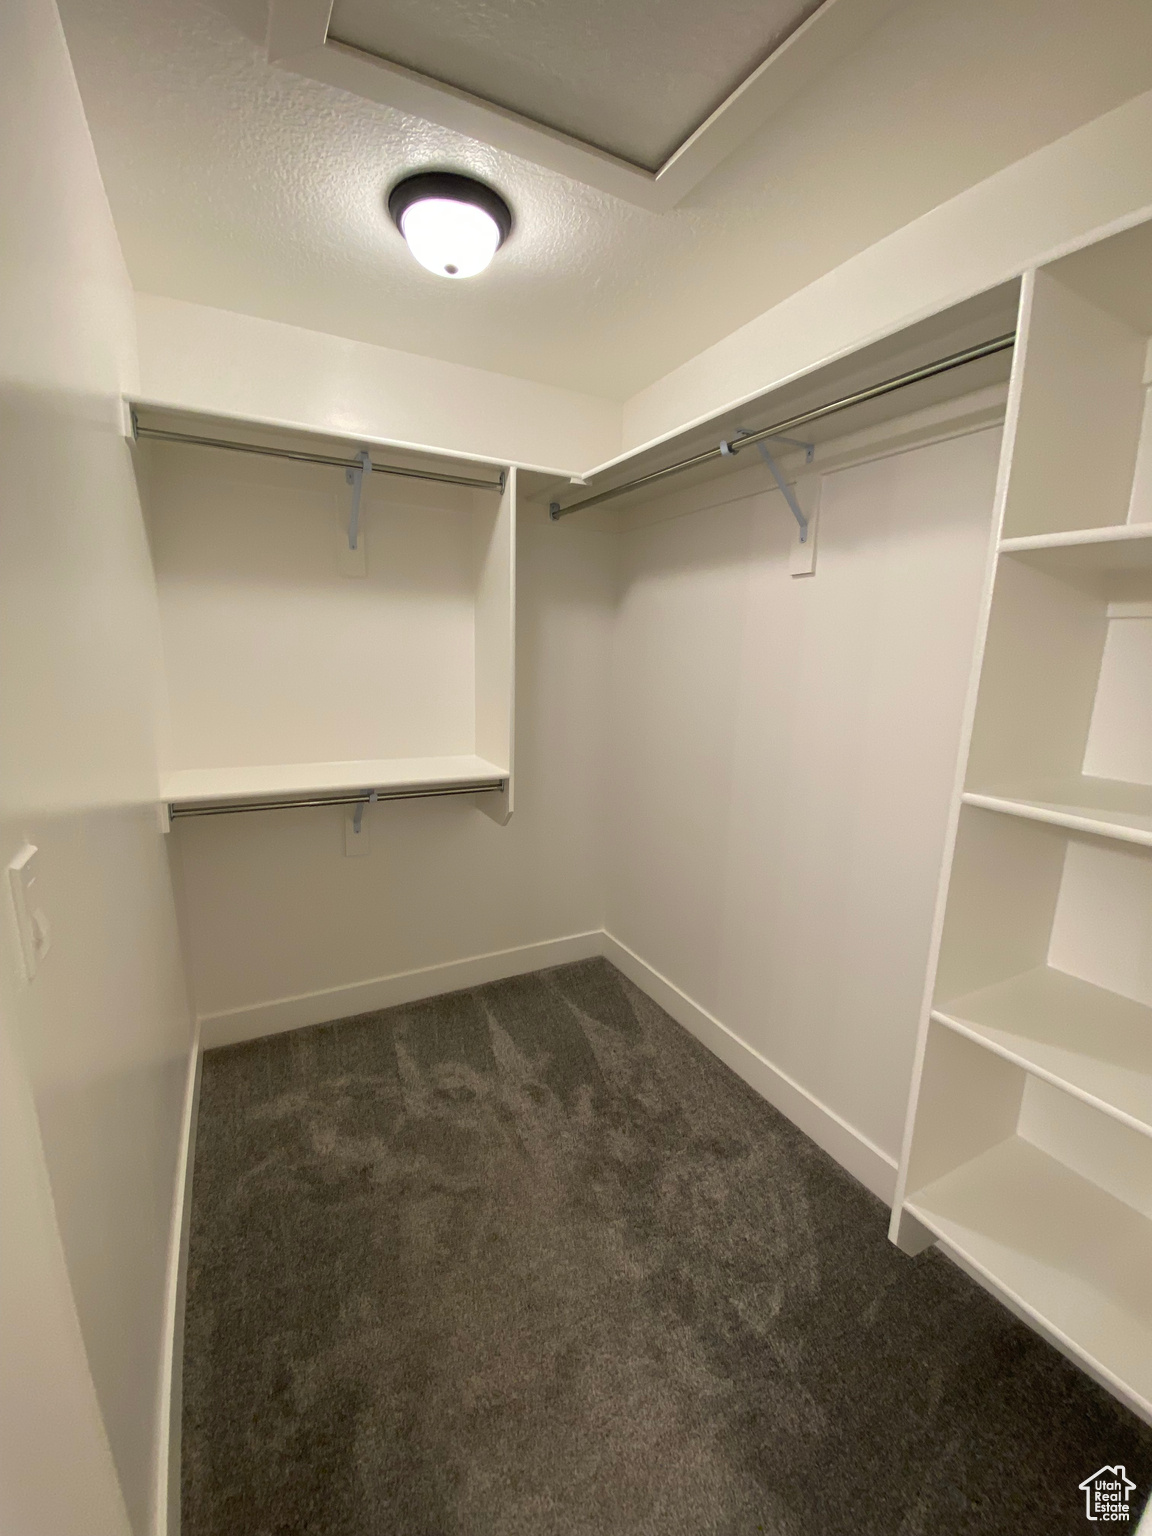 Spacious closet featuring dark colored carpet